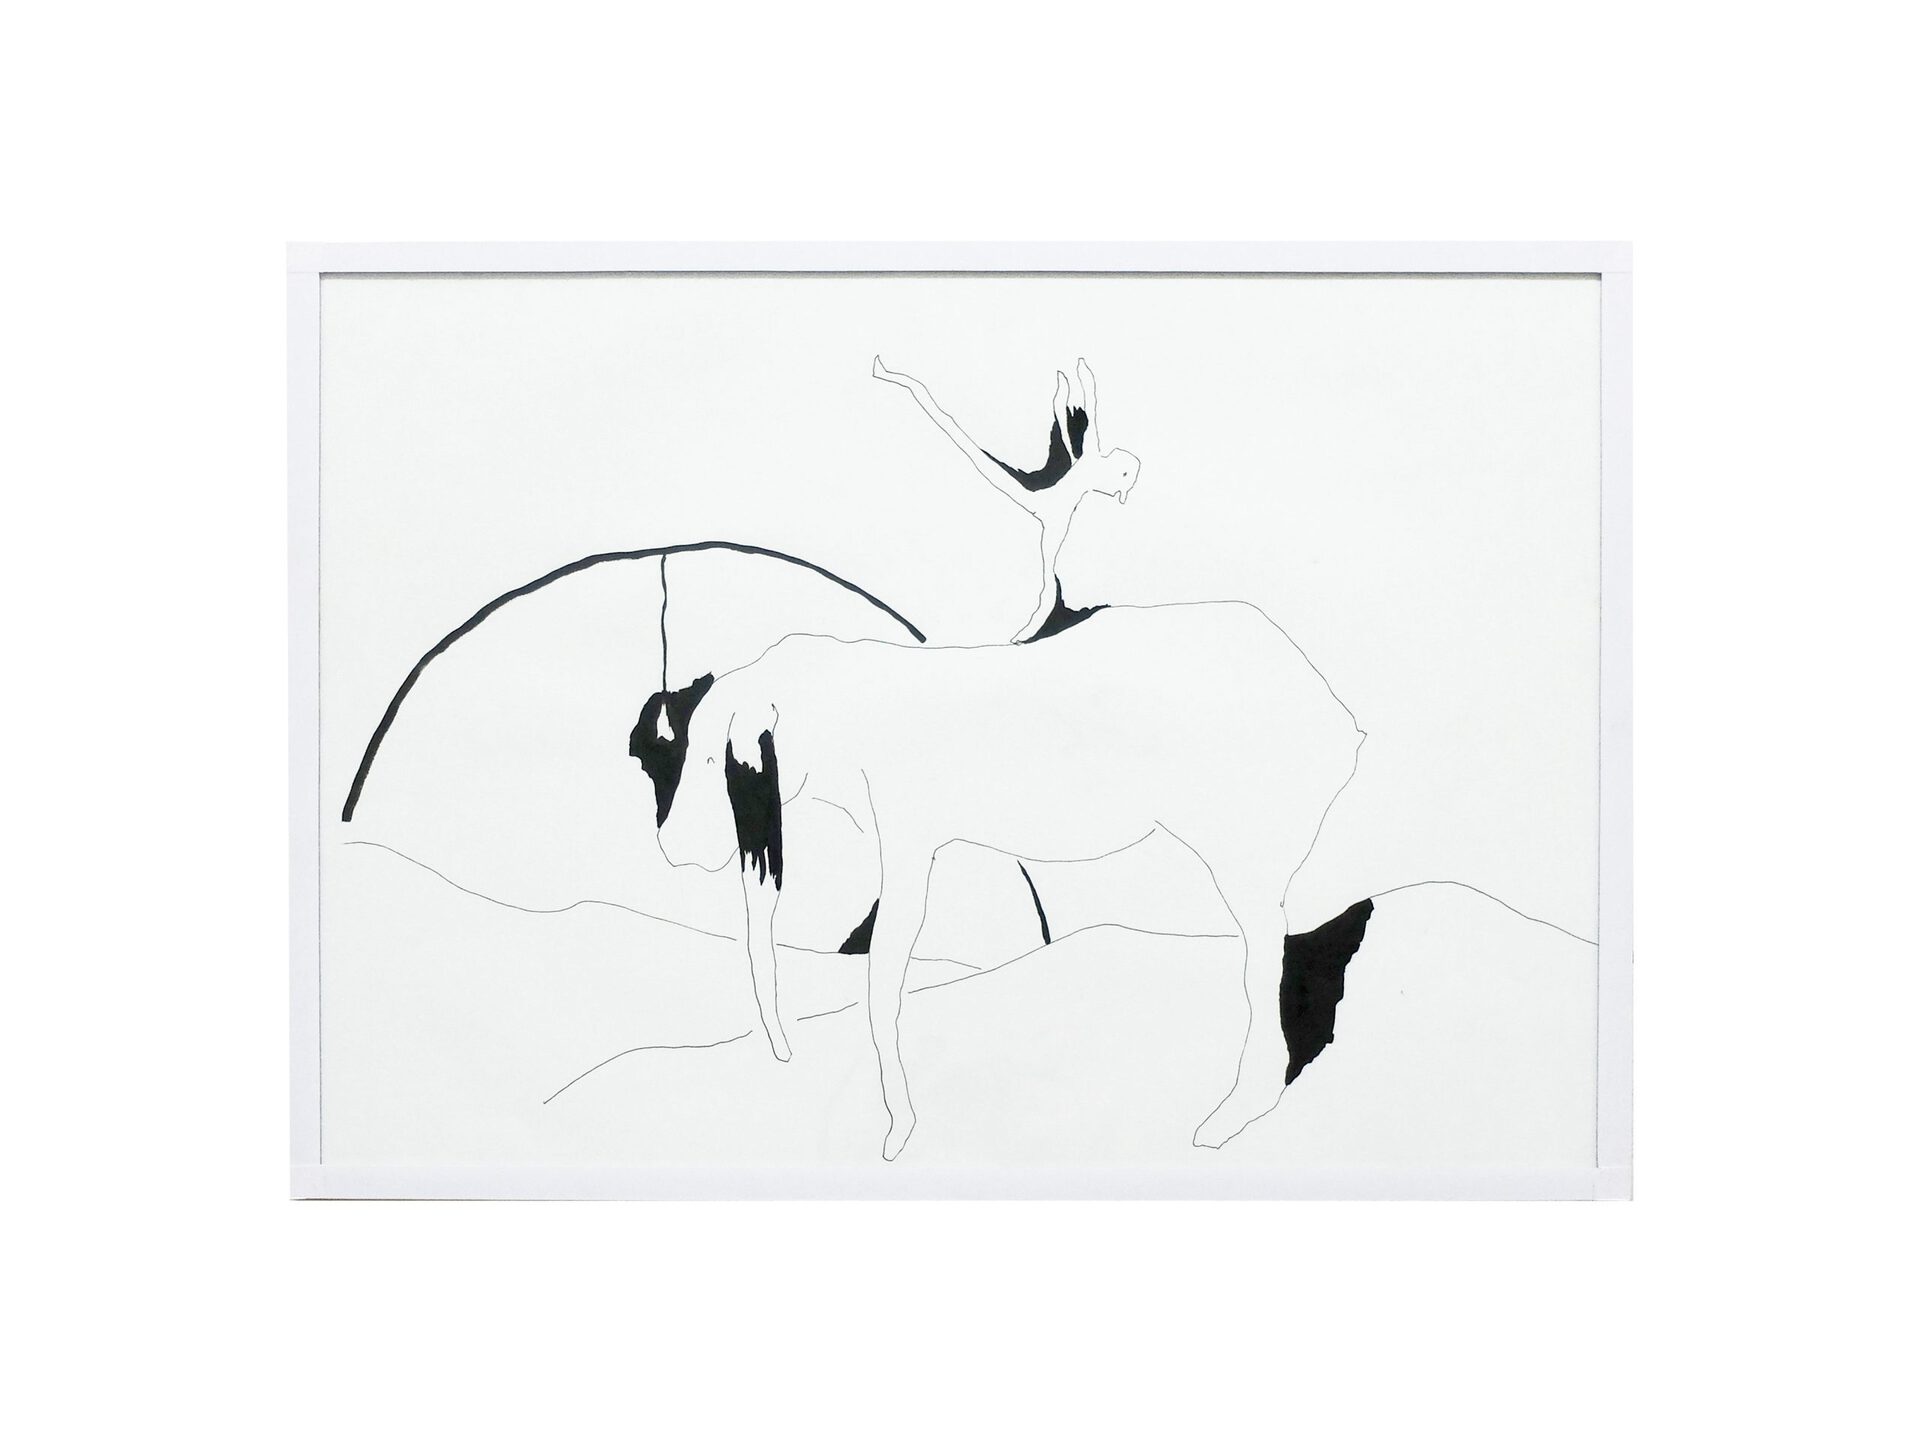 Sophie Jung, Stray Stages, 2021. ink, paper, market framed, 29.7 x 42 cm.